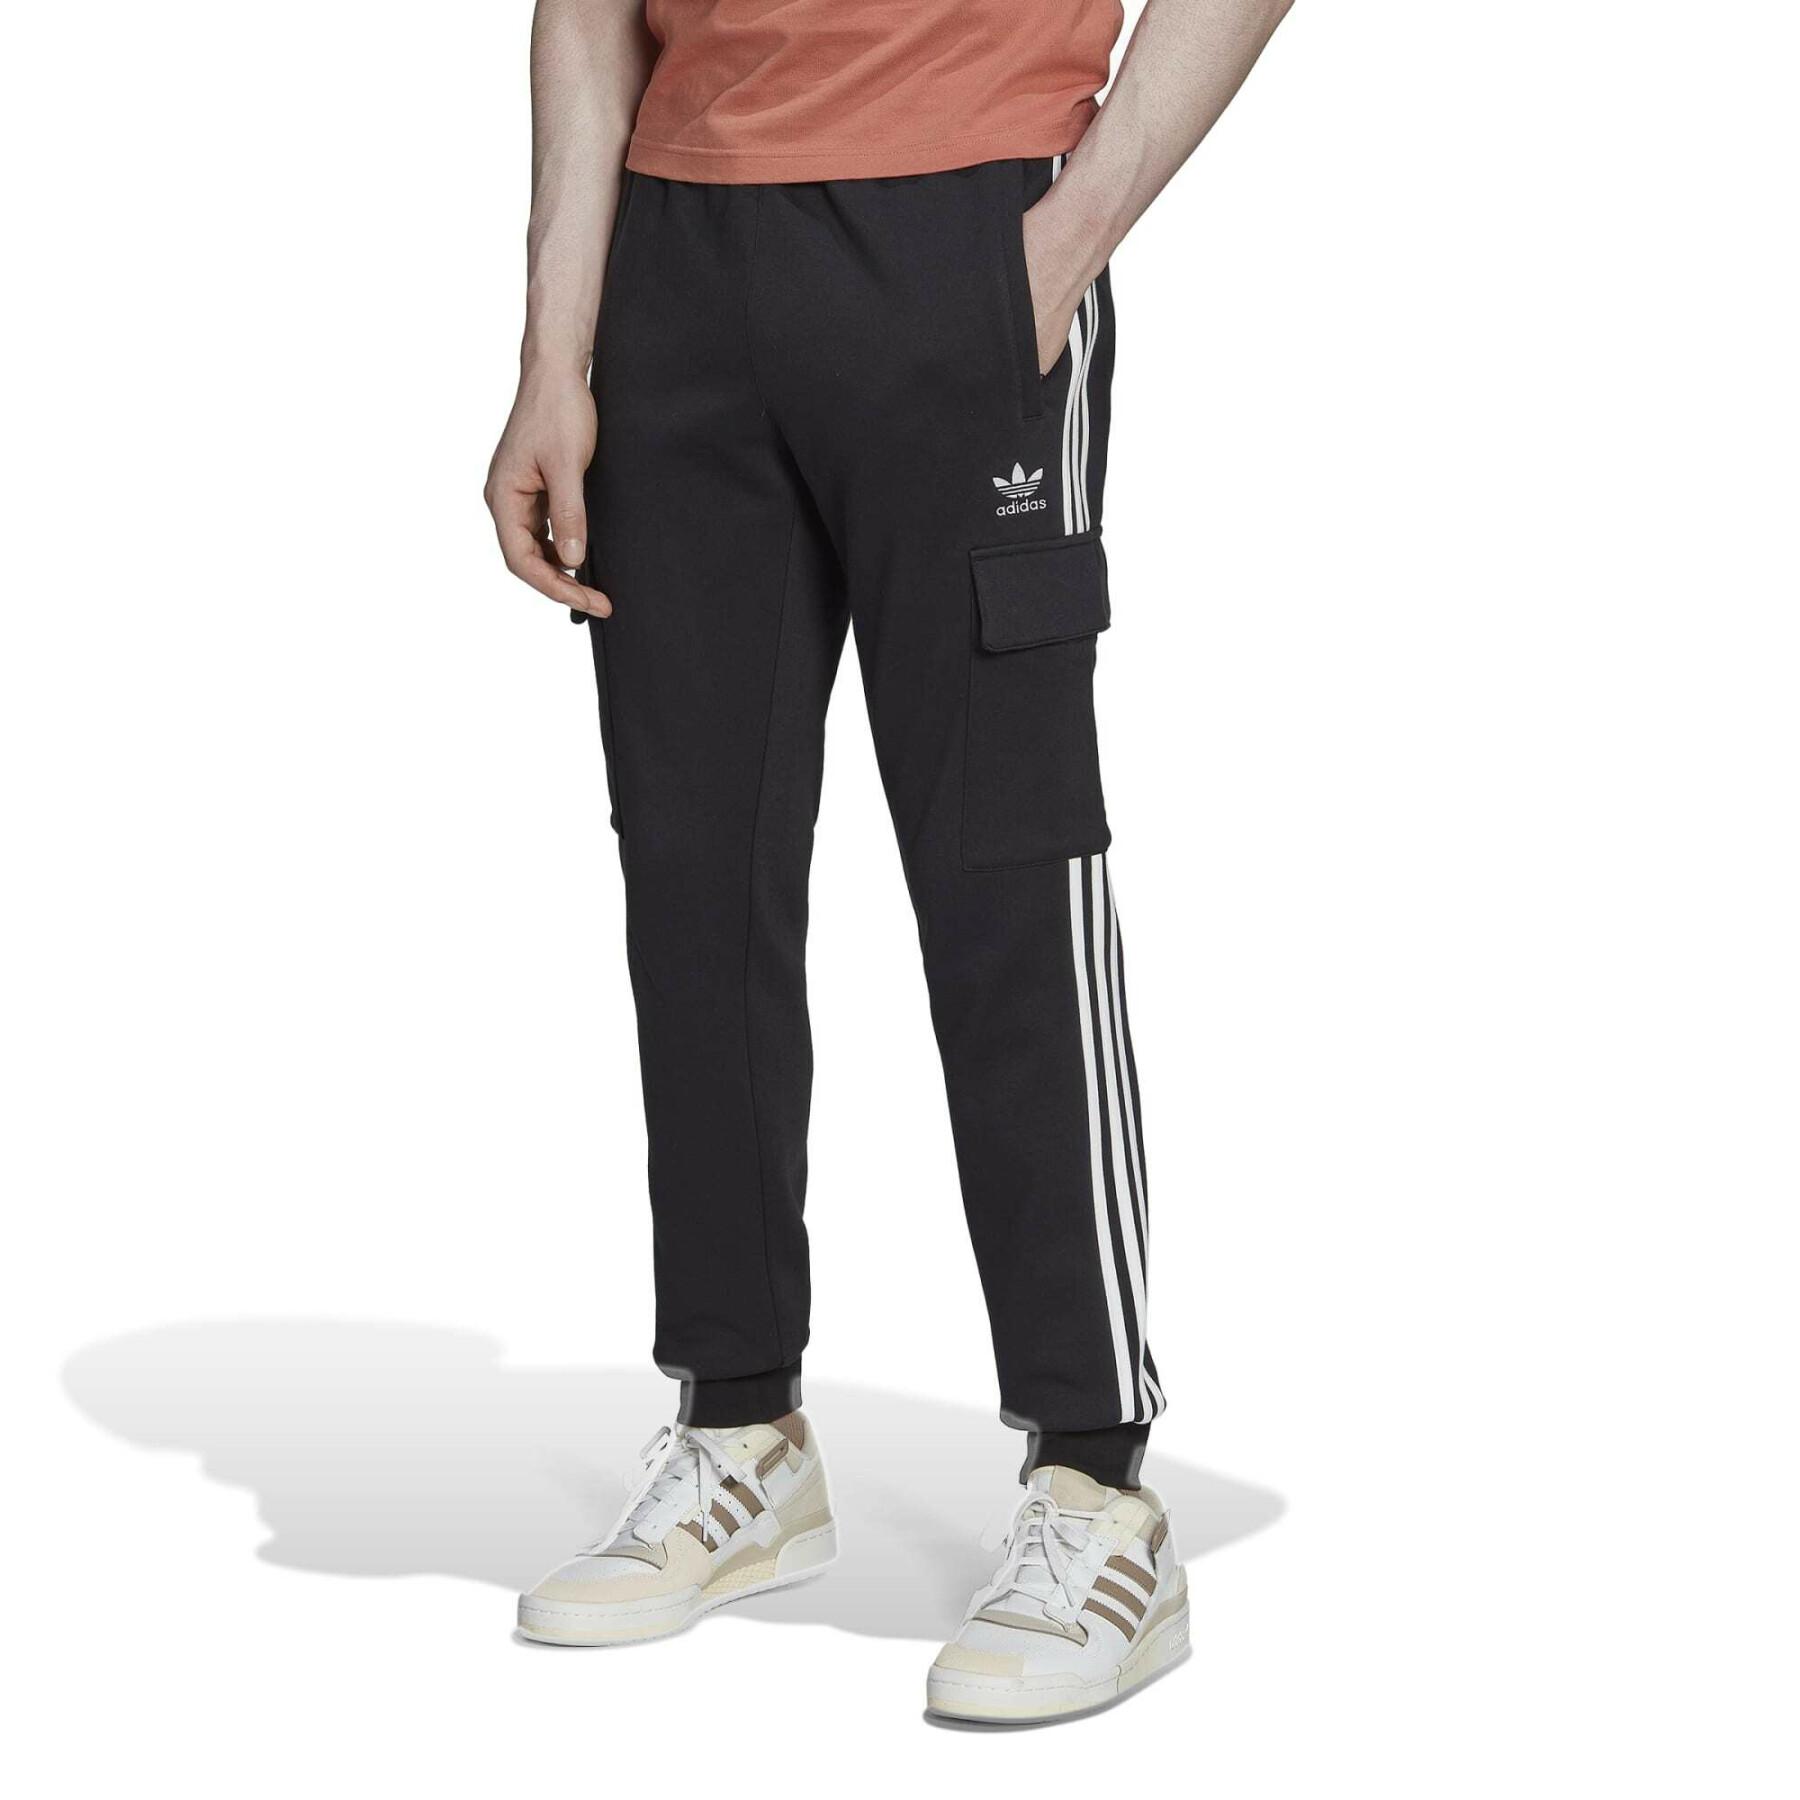 Slim-fit cargo jogging suit with 3 stripes adidas Originals Adicolor